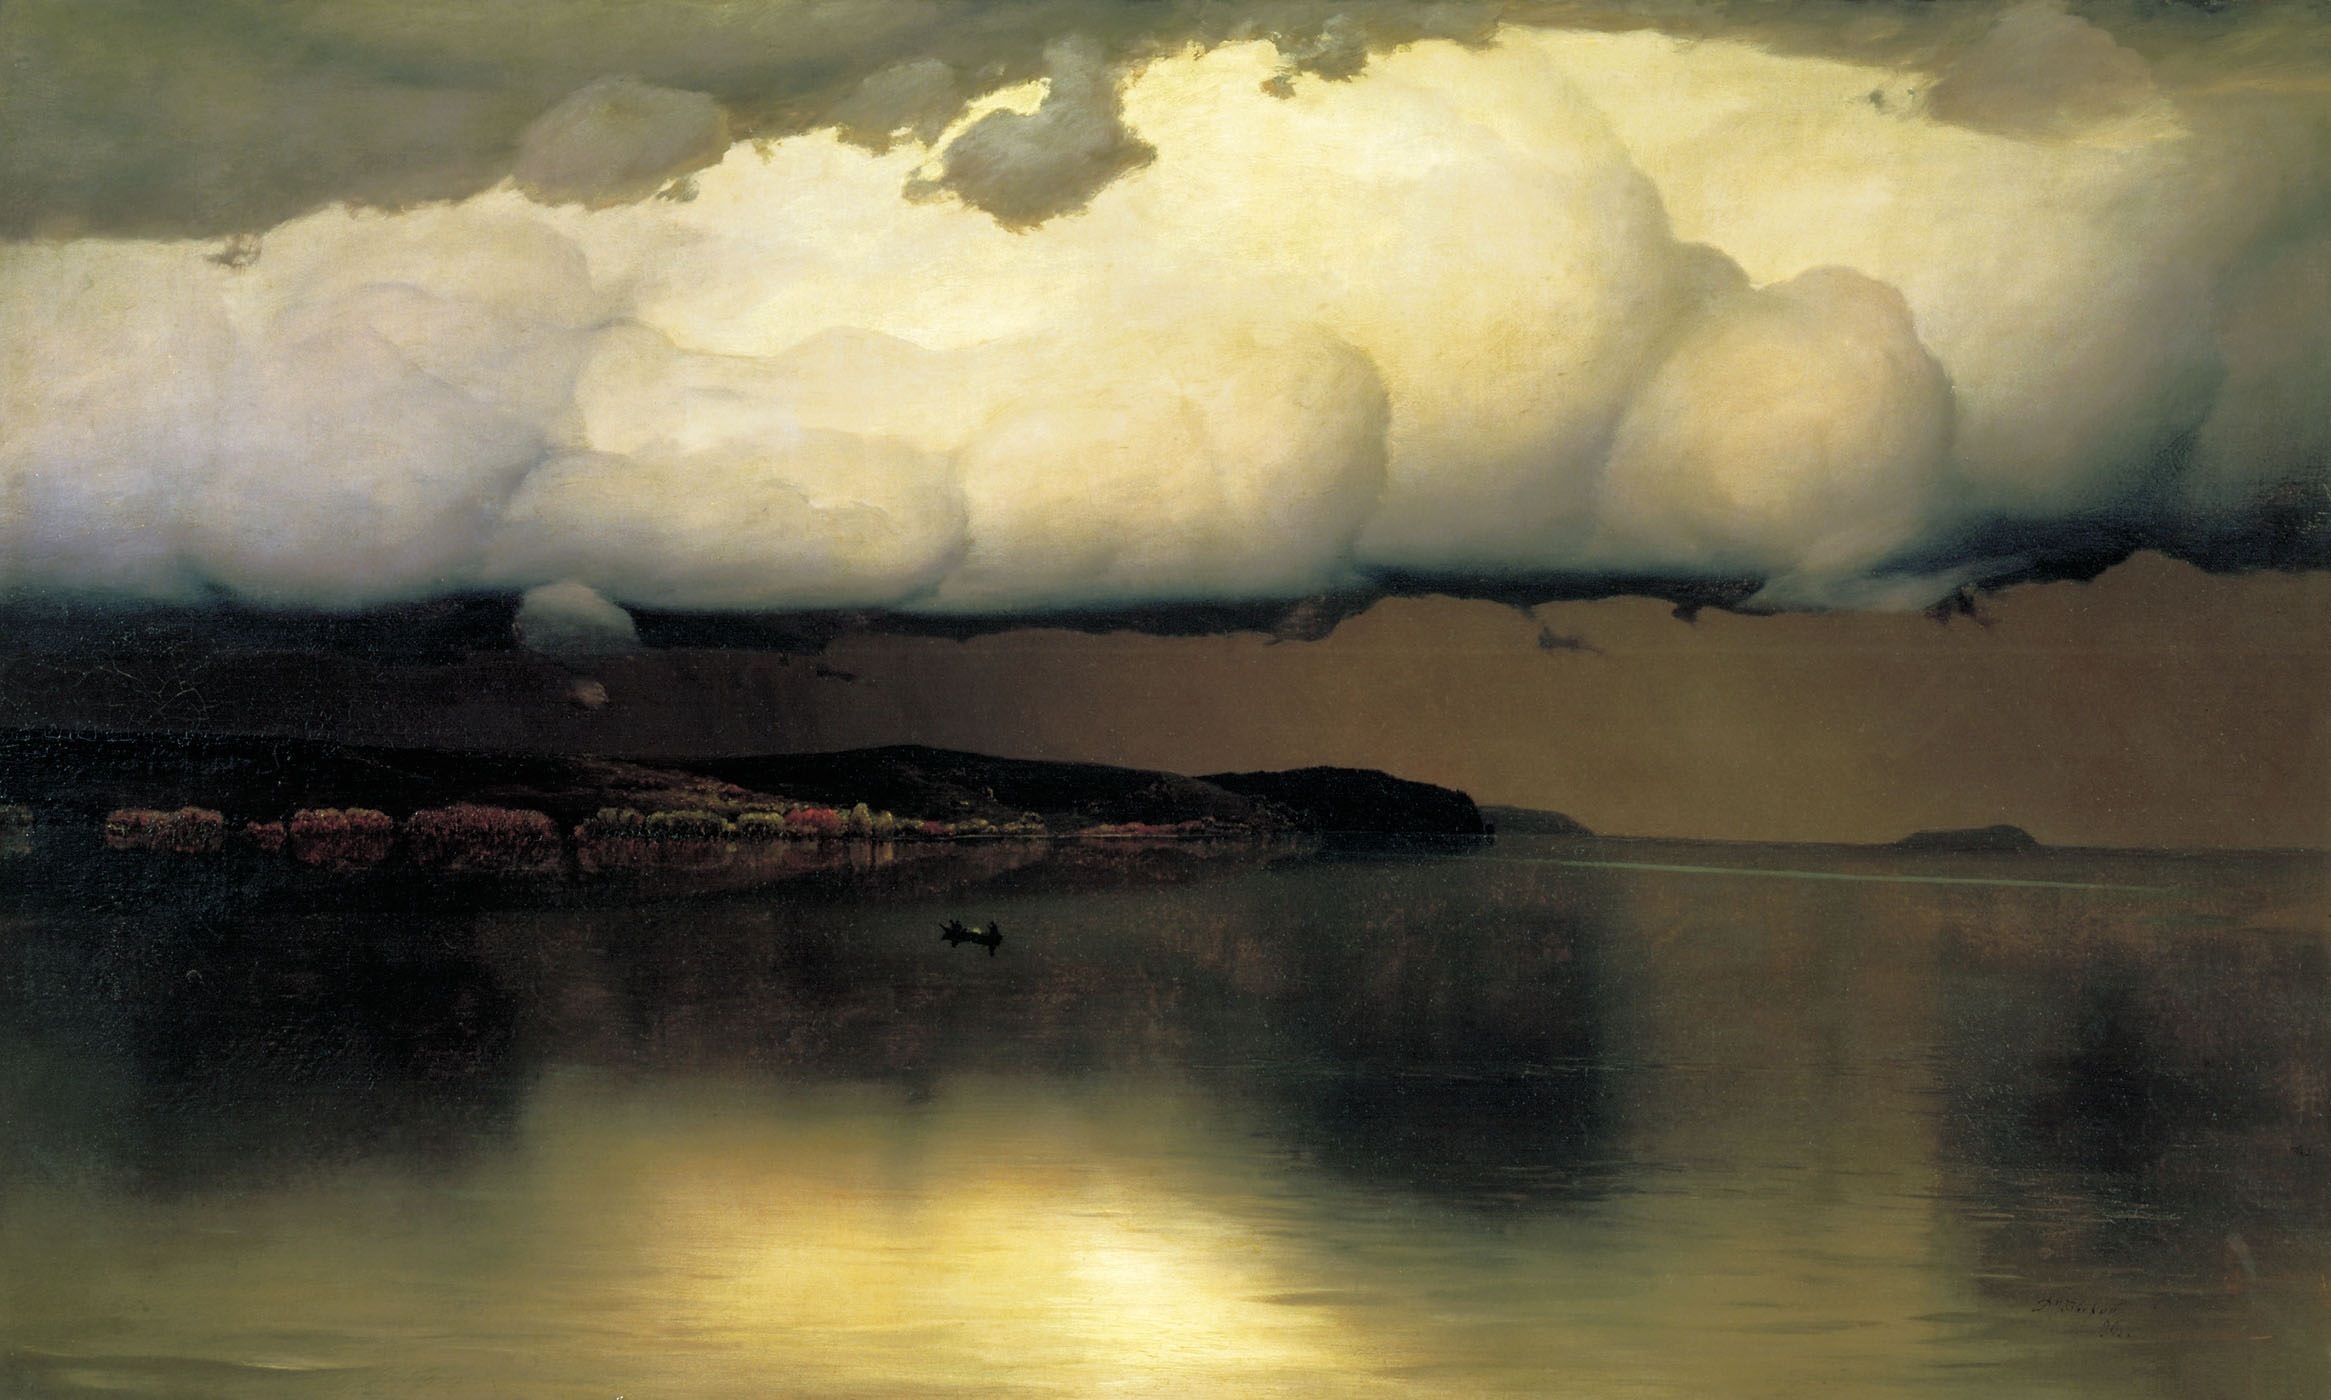 Dinginlik (Fırtına Öncesi Sessizlik) by Nikolay Dubovskoy - 1890 